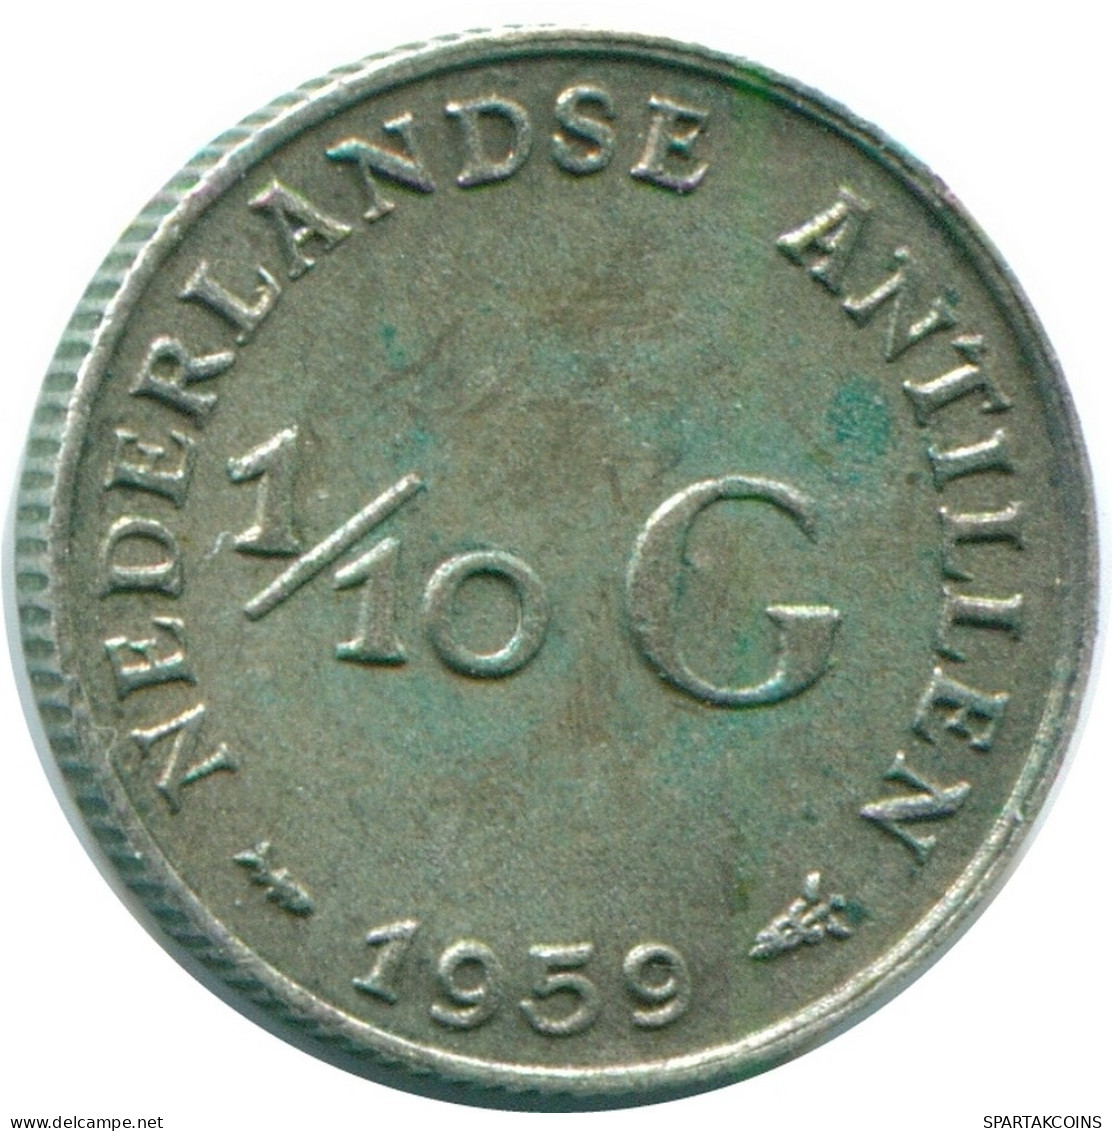 1/10 GULDEN 1959 NIEDERLÄNDISCHE ANTILLEN SILBER Koloniale Münze #NL12214.3.D.A - Nederlandse Antillen